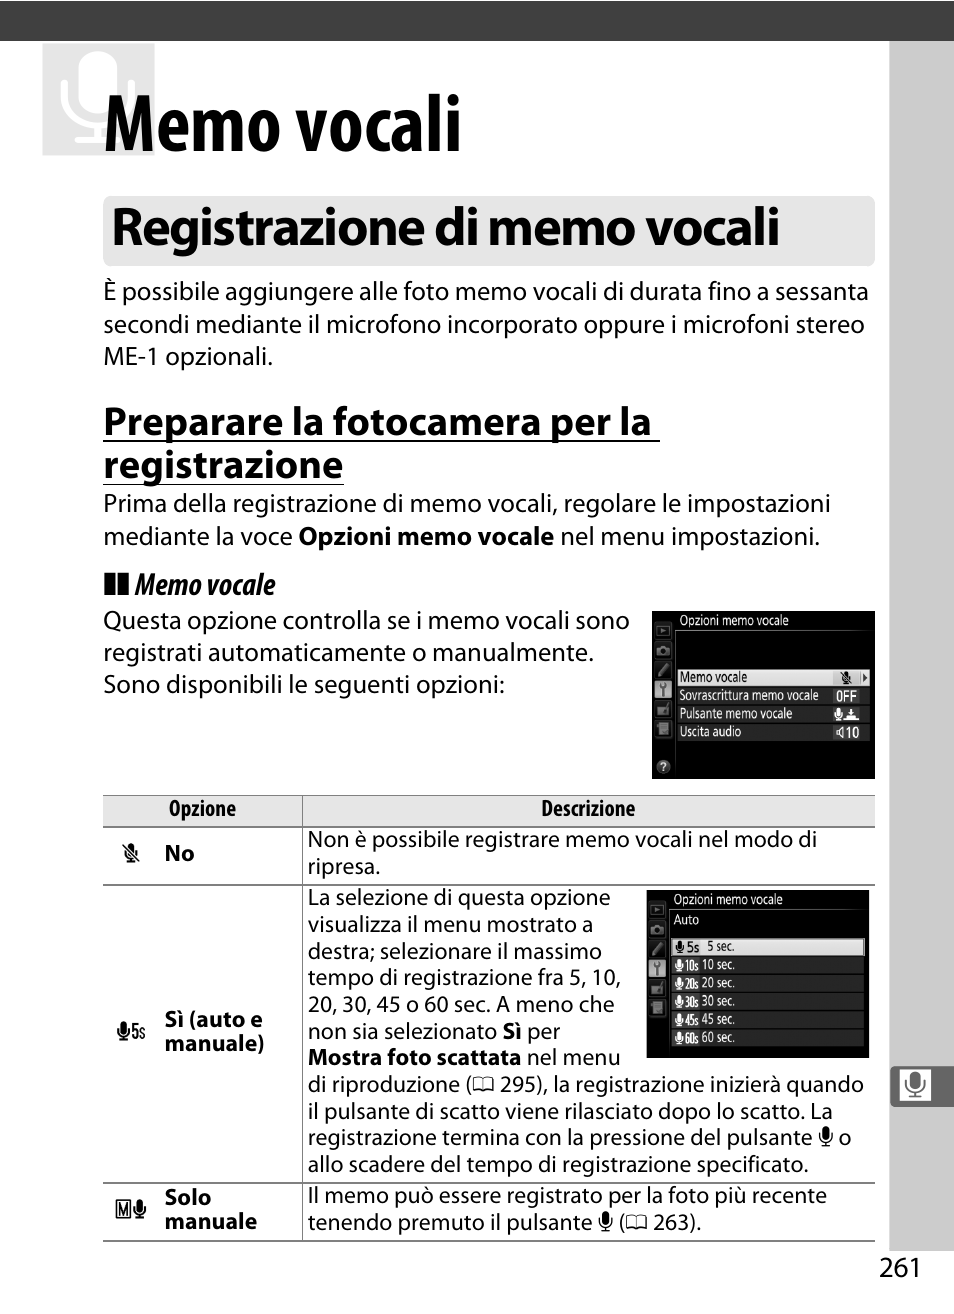 Memo vocali, Registrazione di memo vocali, Piena. i memo vocali | 0 261) vengono allega, Preparare la fotocamera per la registrazione | Nikon D4S Manuale d'uso | Pagina 283 / 500